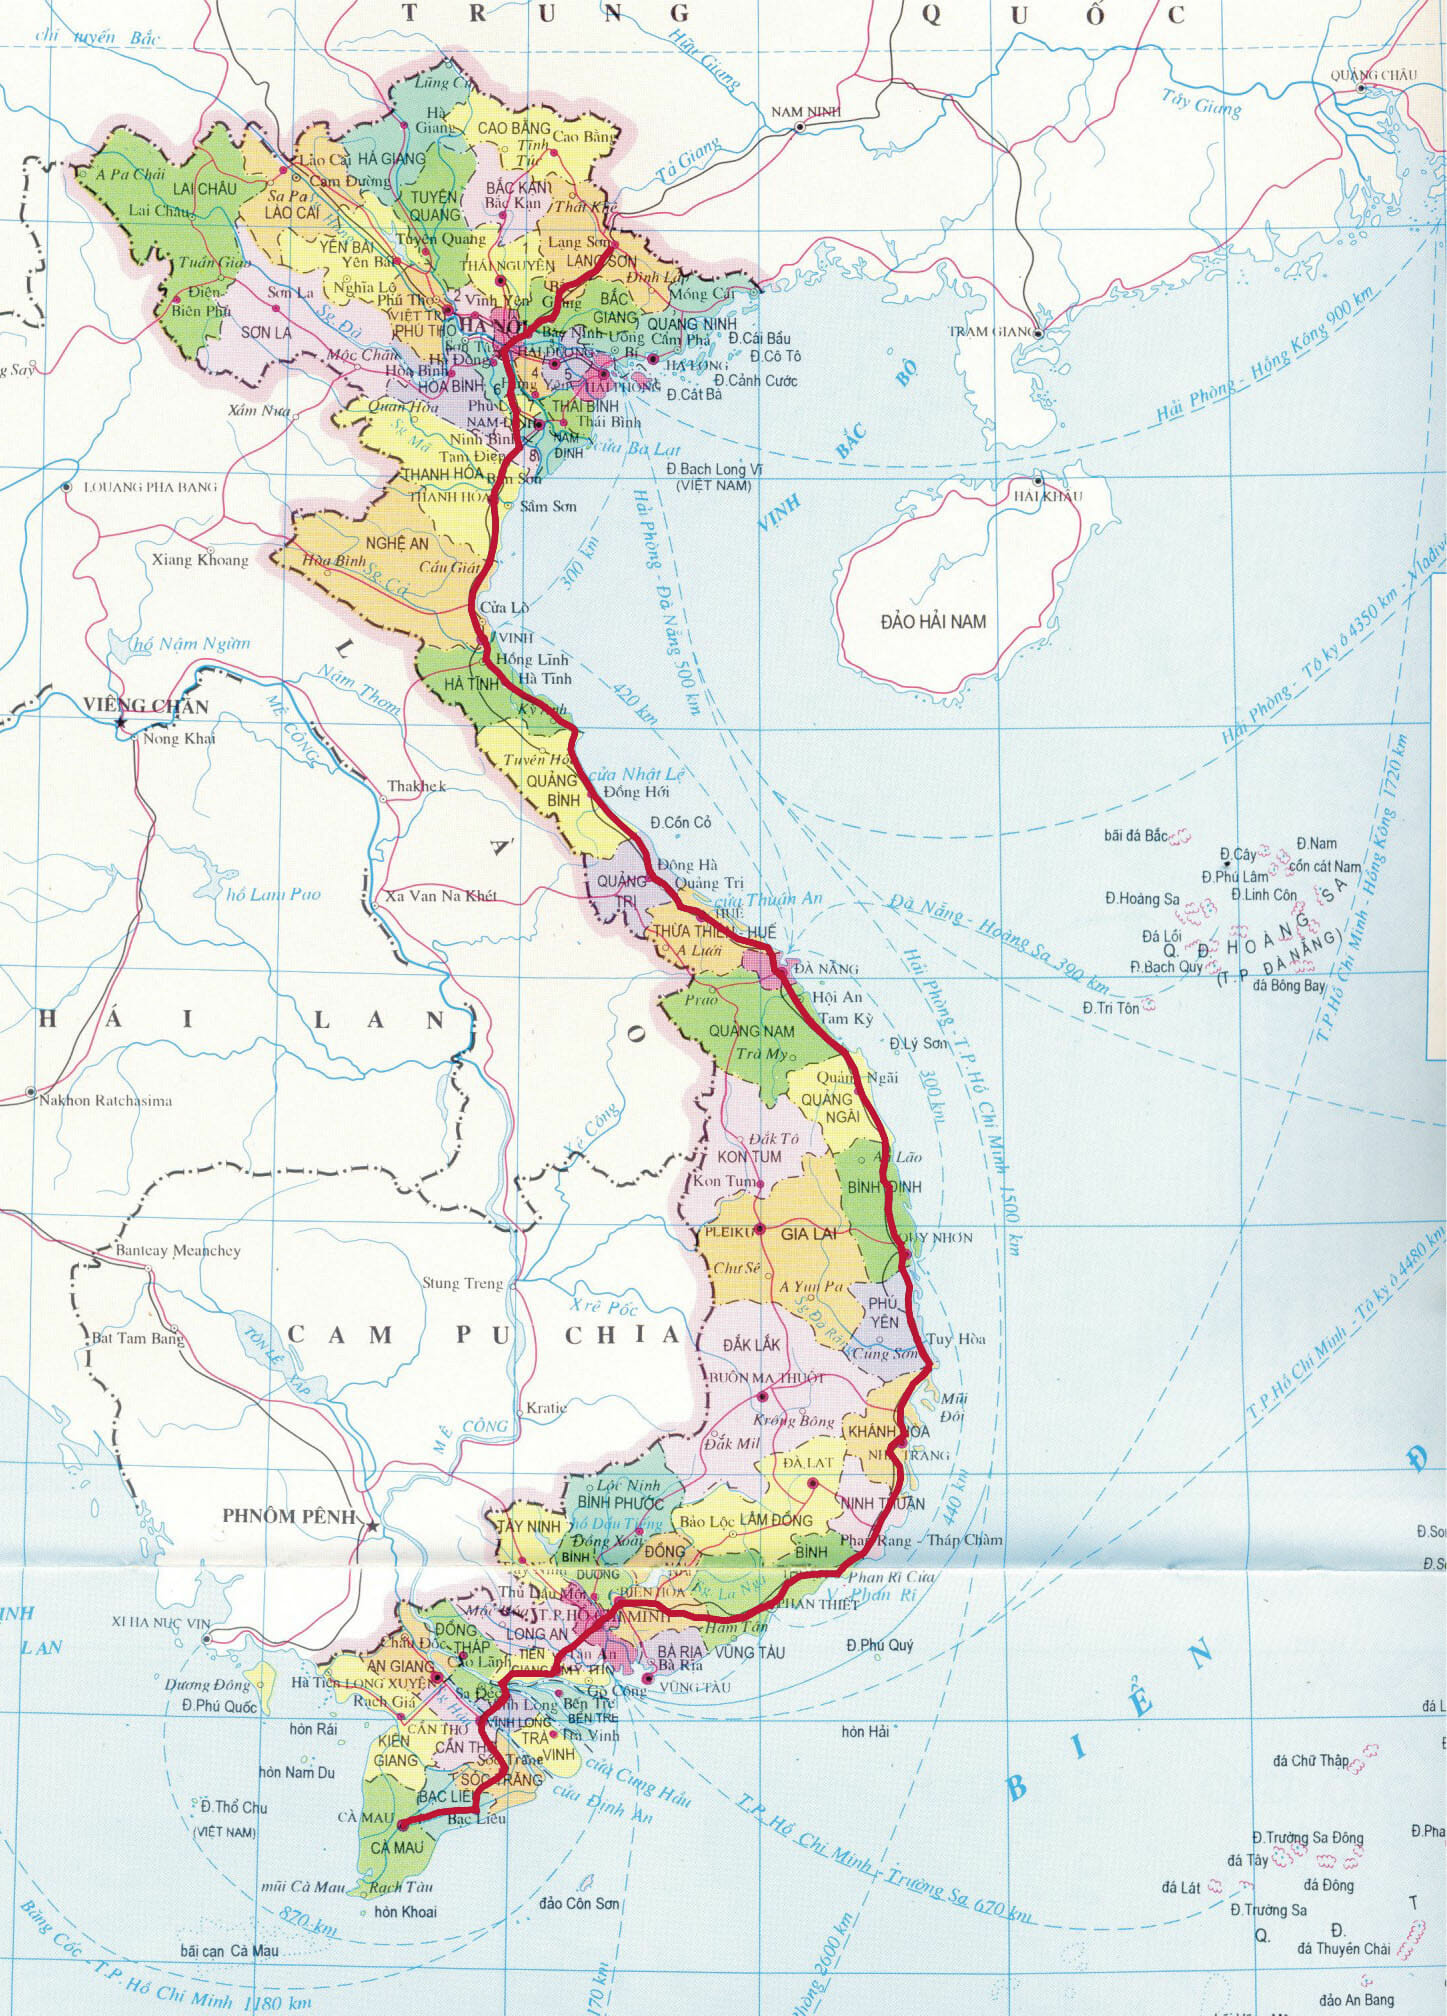 Choáng ngợp trước vẻ đẹp thiên nhiên từ Bắc vào Nam, từ Đông vào Tây cùng bản đồ hệ thống giao thông đường bộ Việt Nam. Tận hưởng một chuyến đi thành công với nhiều trải nghiệm đáng nhớ.